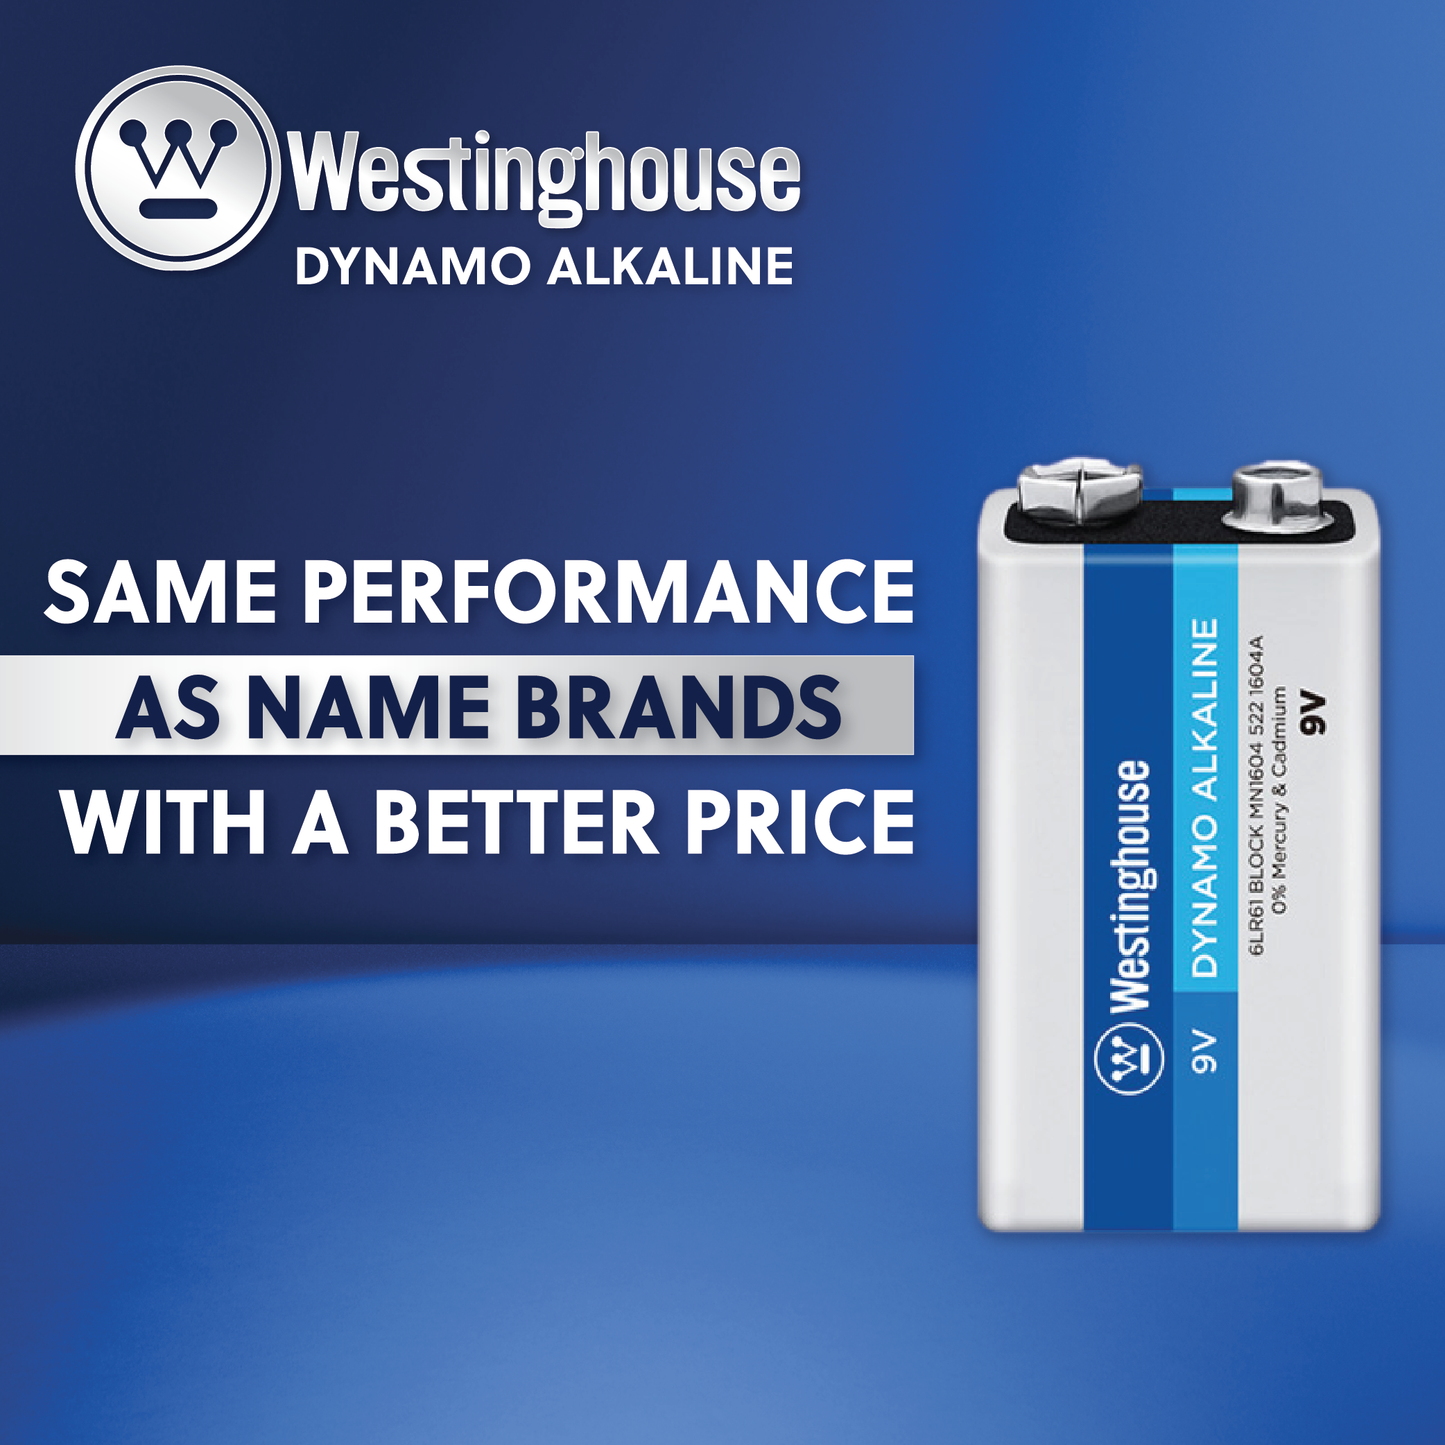 Westinghouse AAA Dynamo Alkaline Batteries Pack of 24